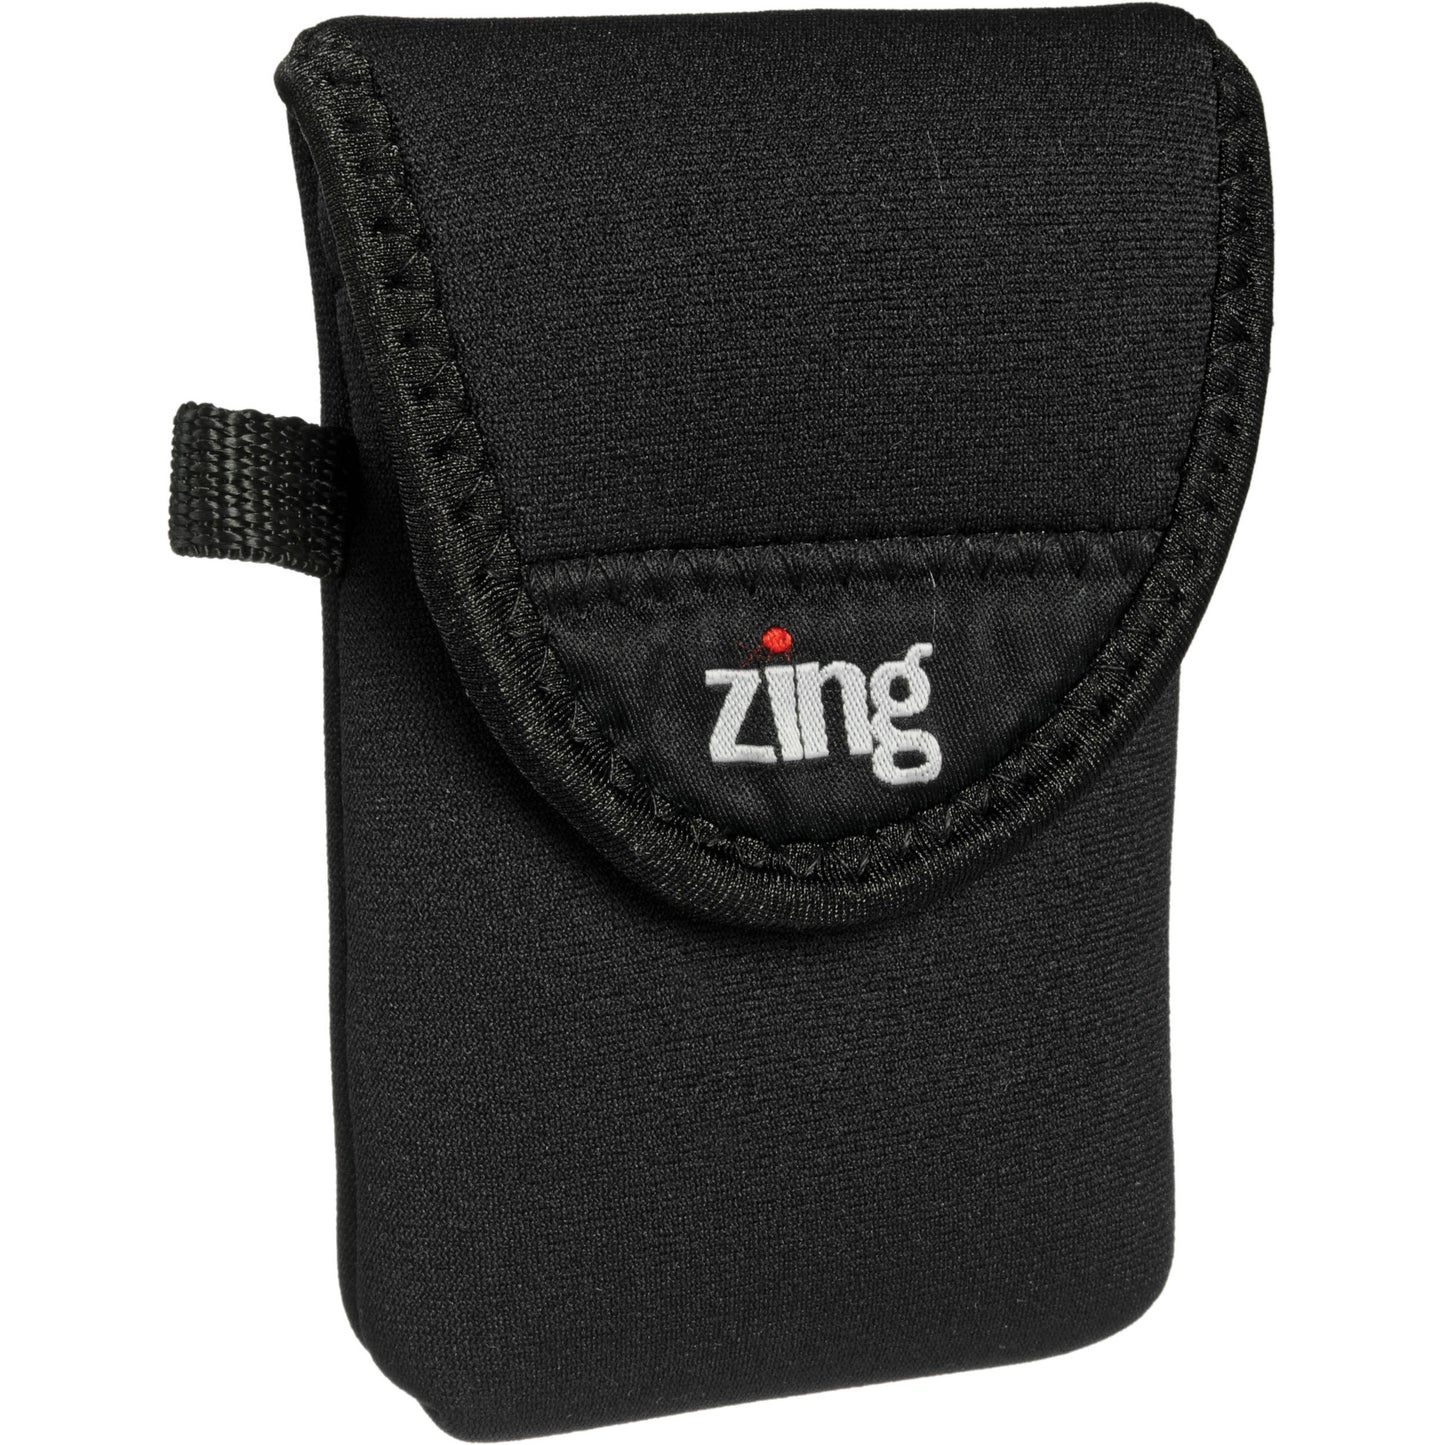 Zing SPE 카메라 / 전자 제품 벨트 백